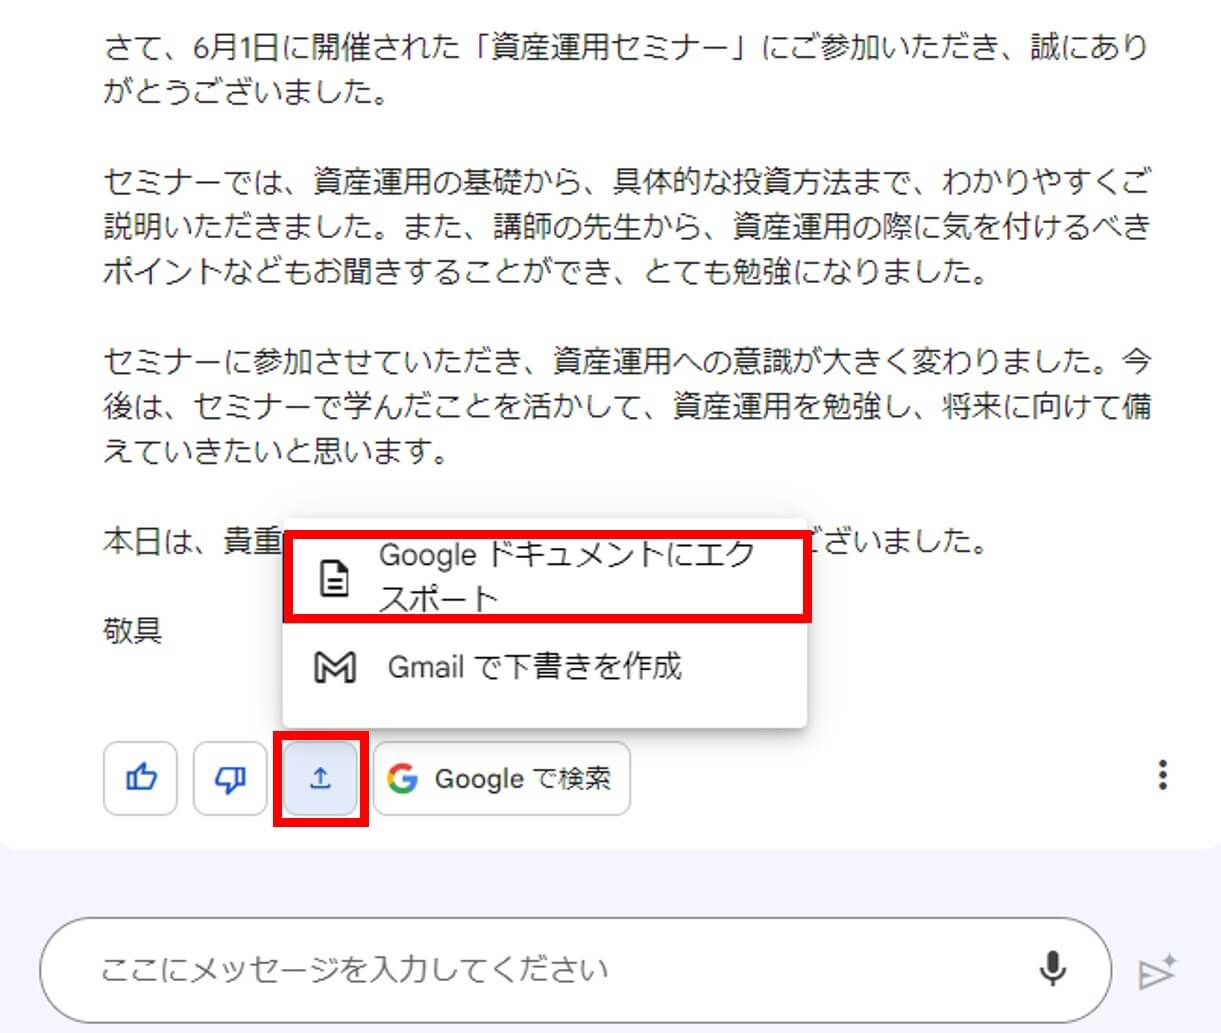 Google Bardが生成したメールをGoogleドキュメントに保存